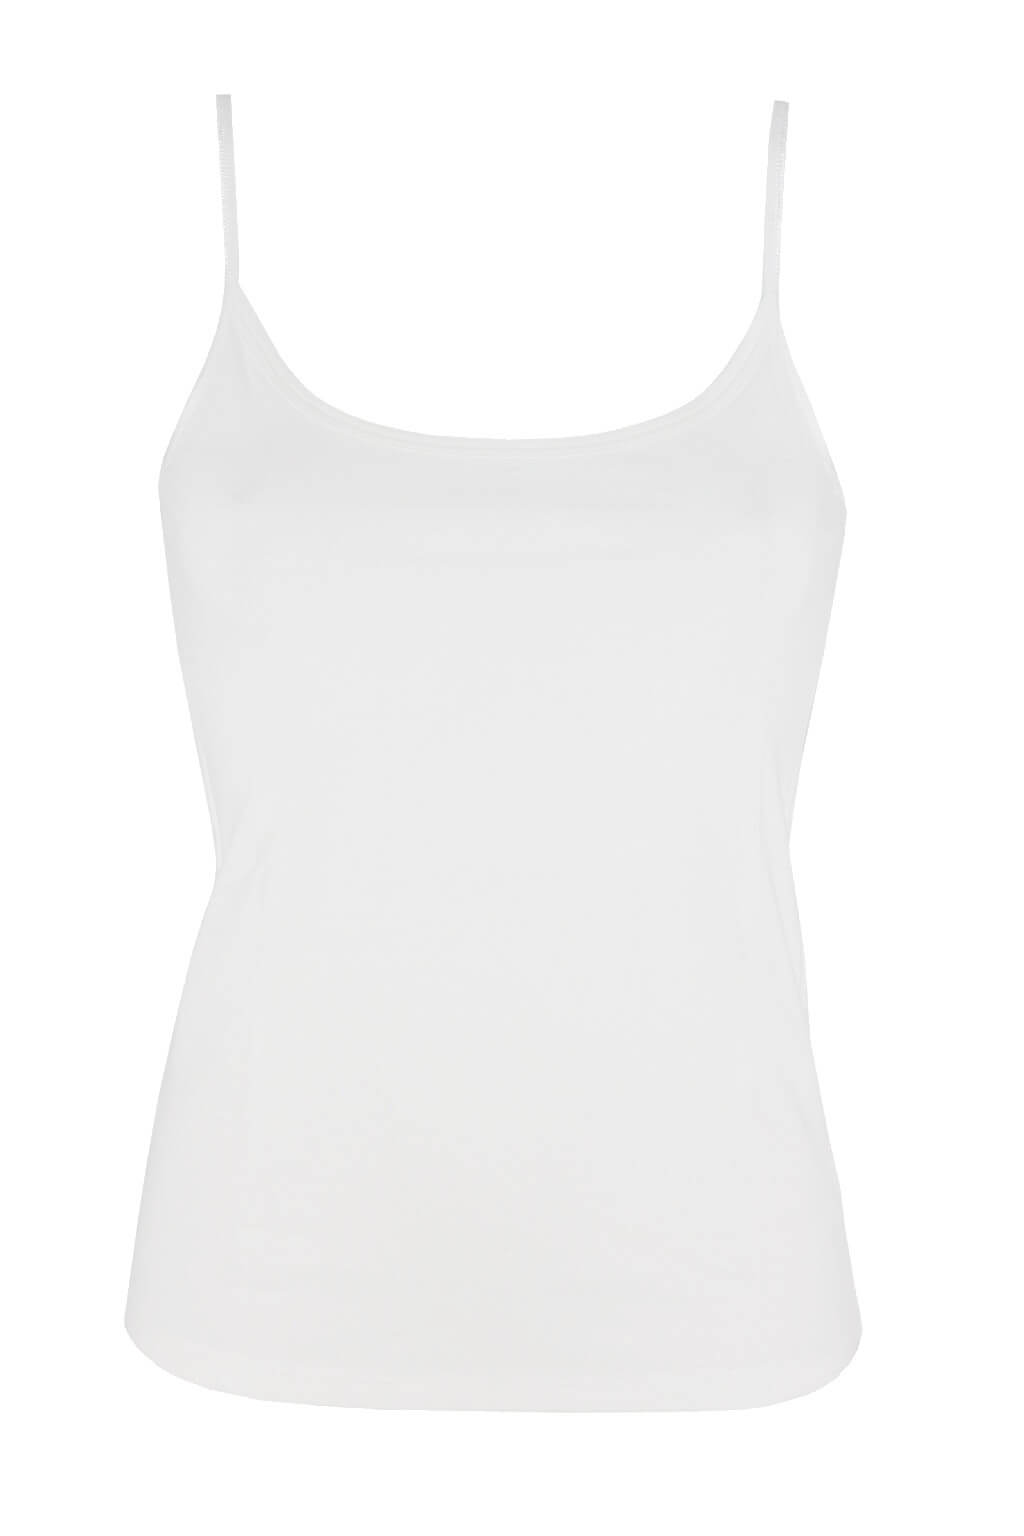 Bellinda Blanco bavlněná spodní košilka 818104 M bílá